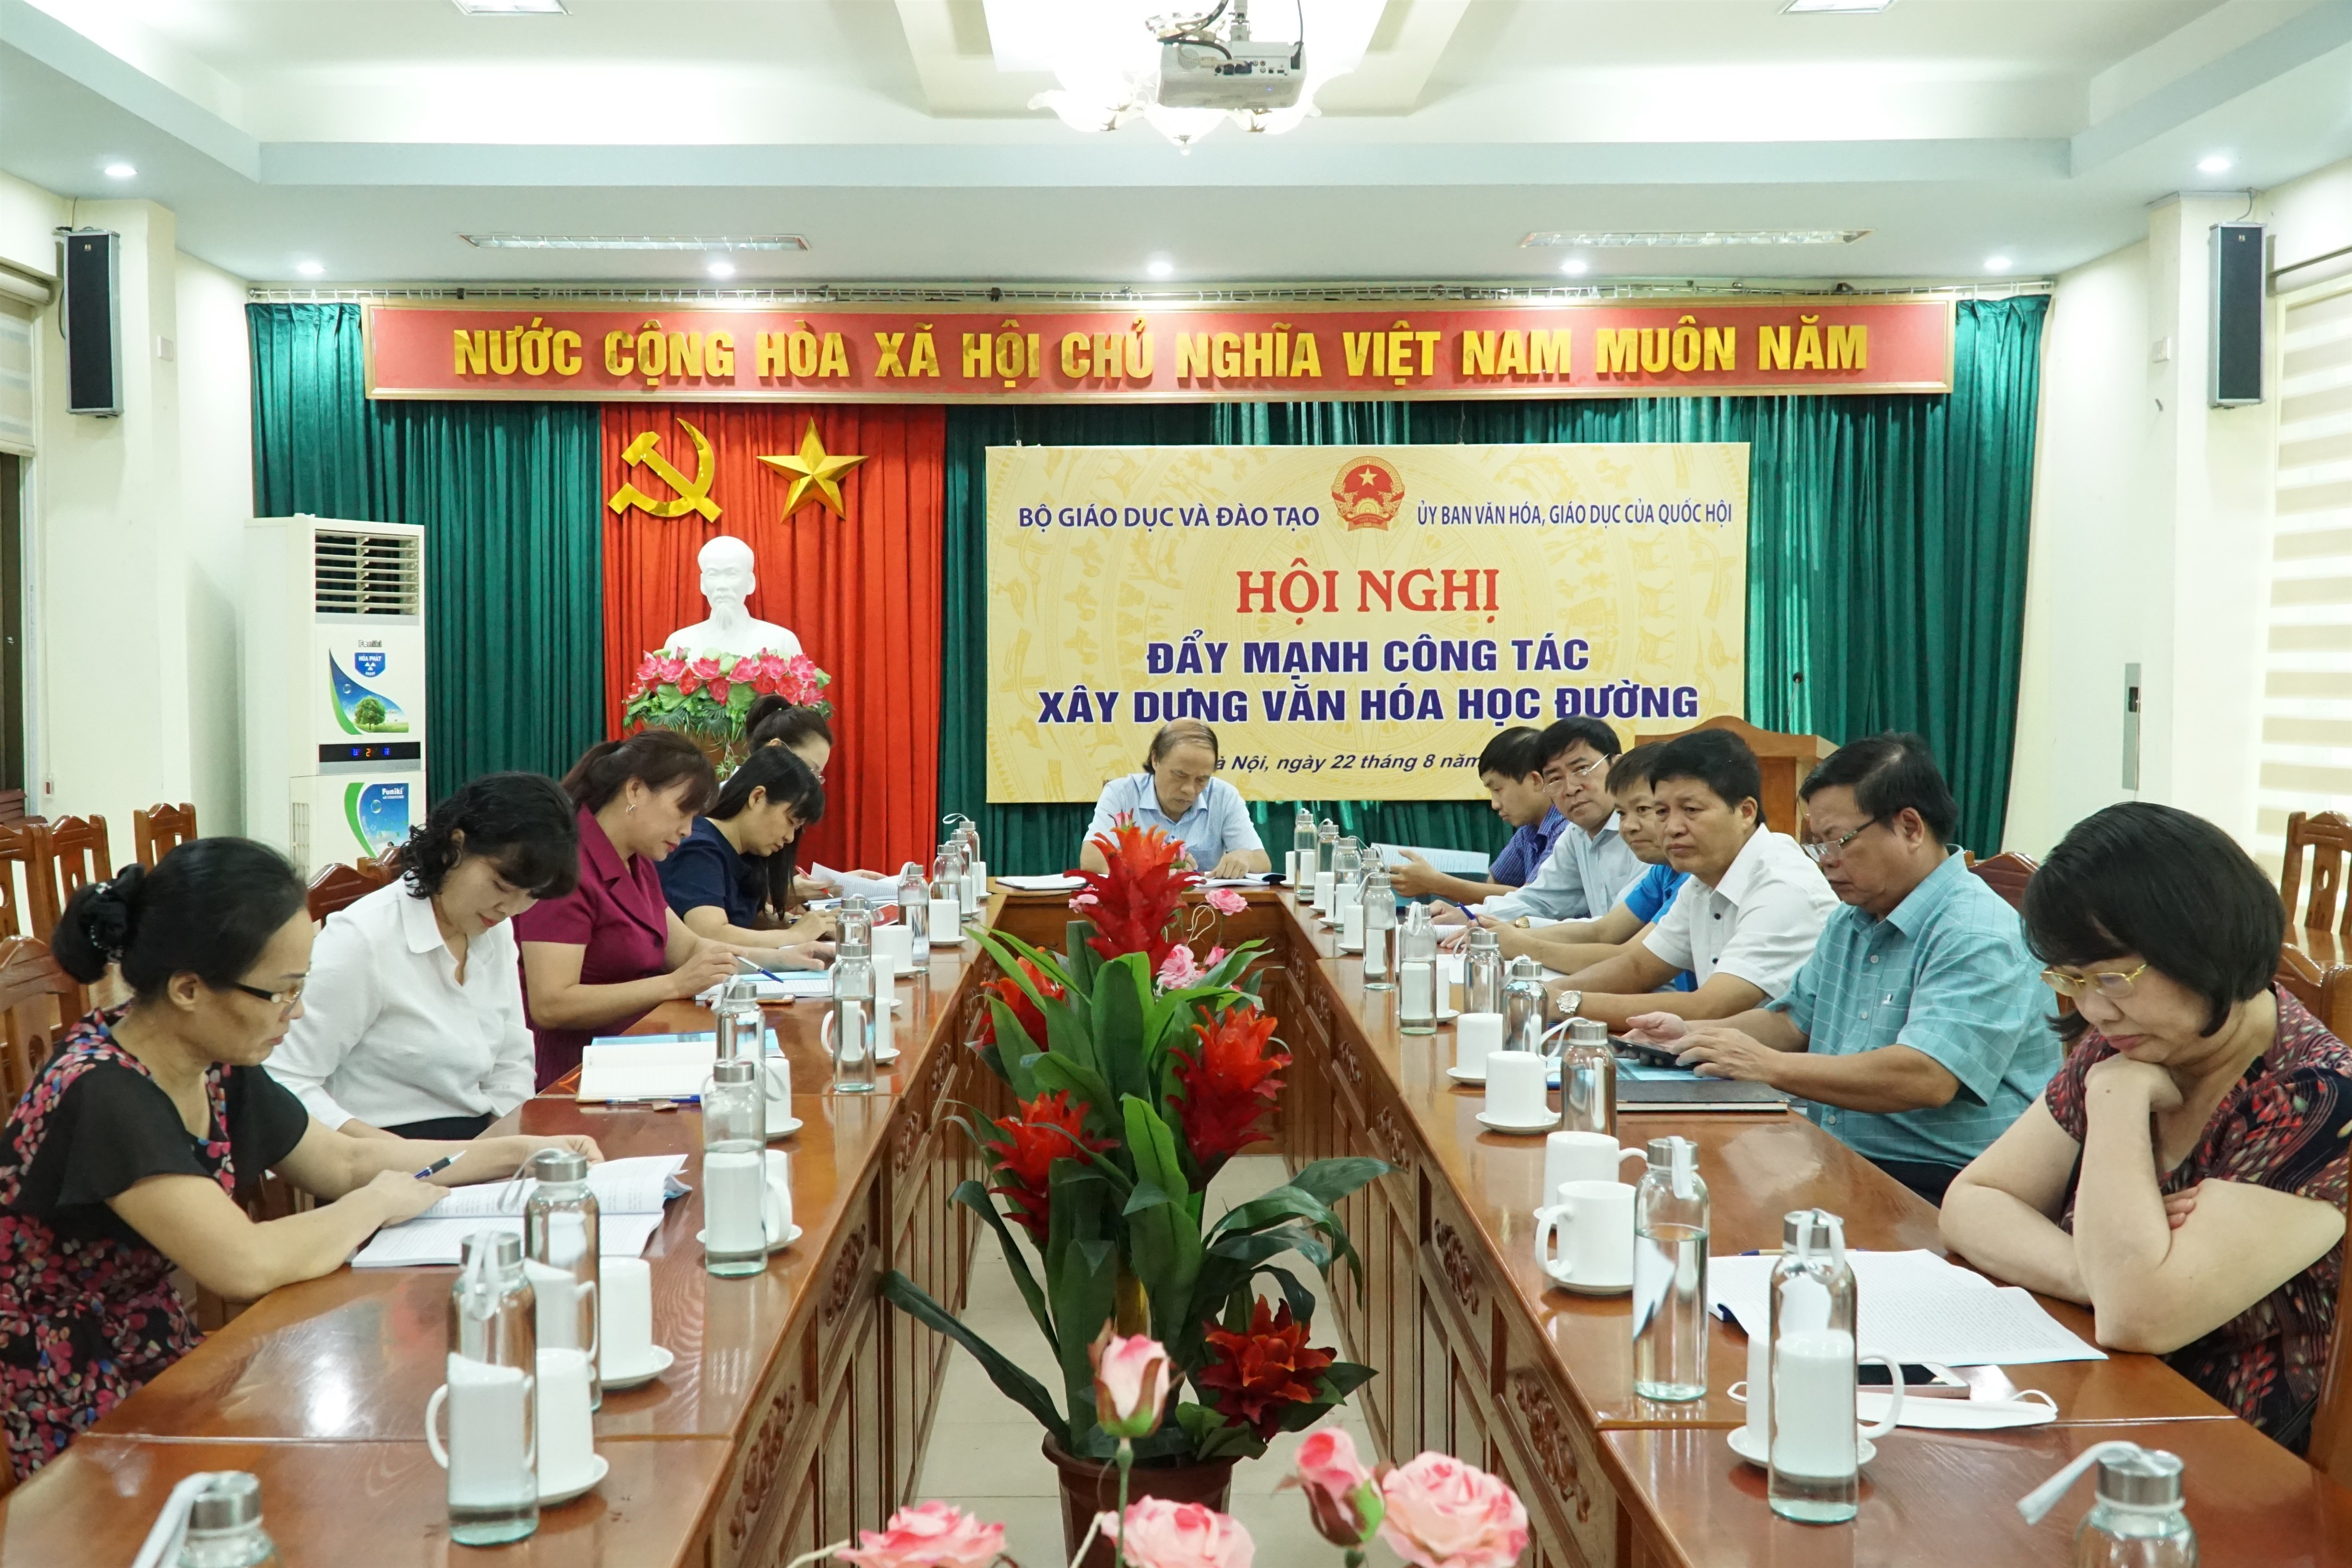 Các đại biểu dự hội nghị tại điểm cầu Cao Bằng.